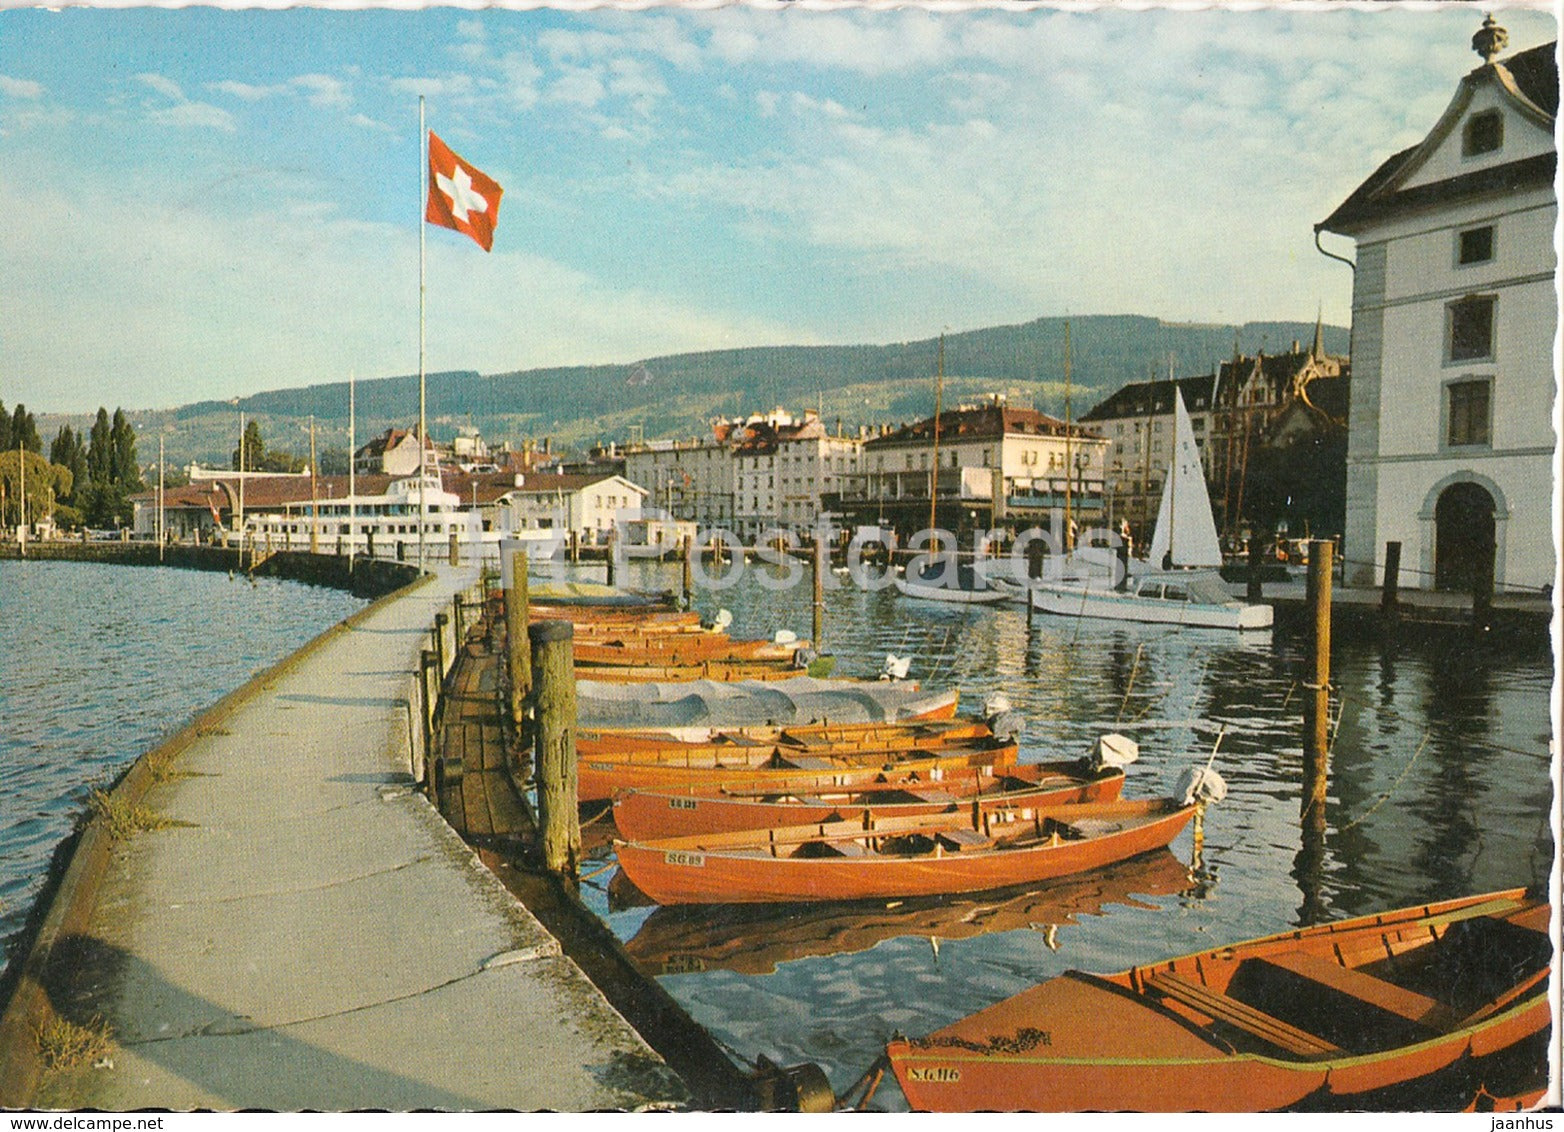 Rorschach am Bodensee - Hafenpartie - boat - 1967 - Switzerland - used - JH Postcards